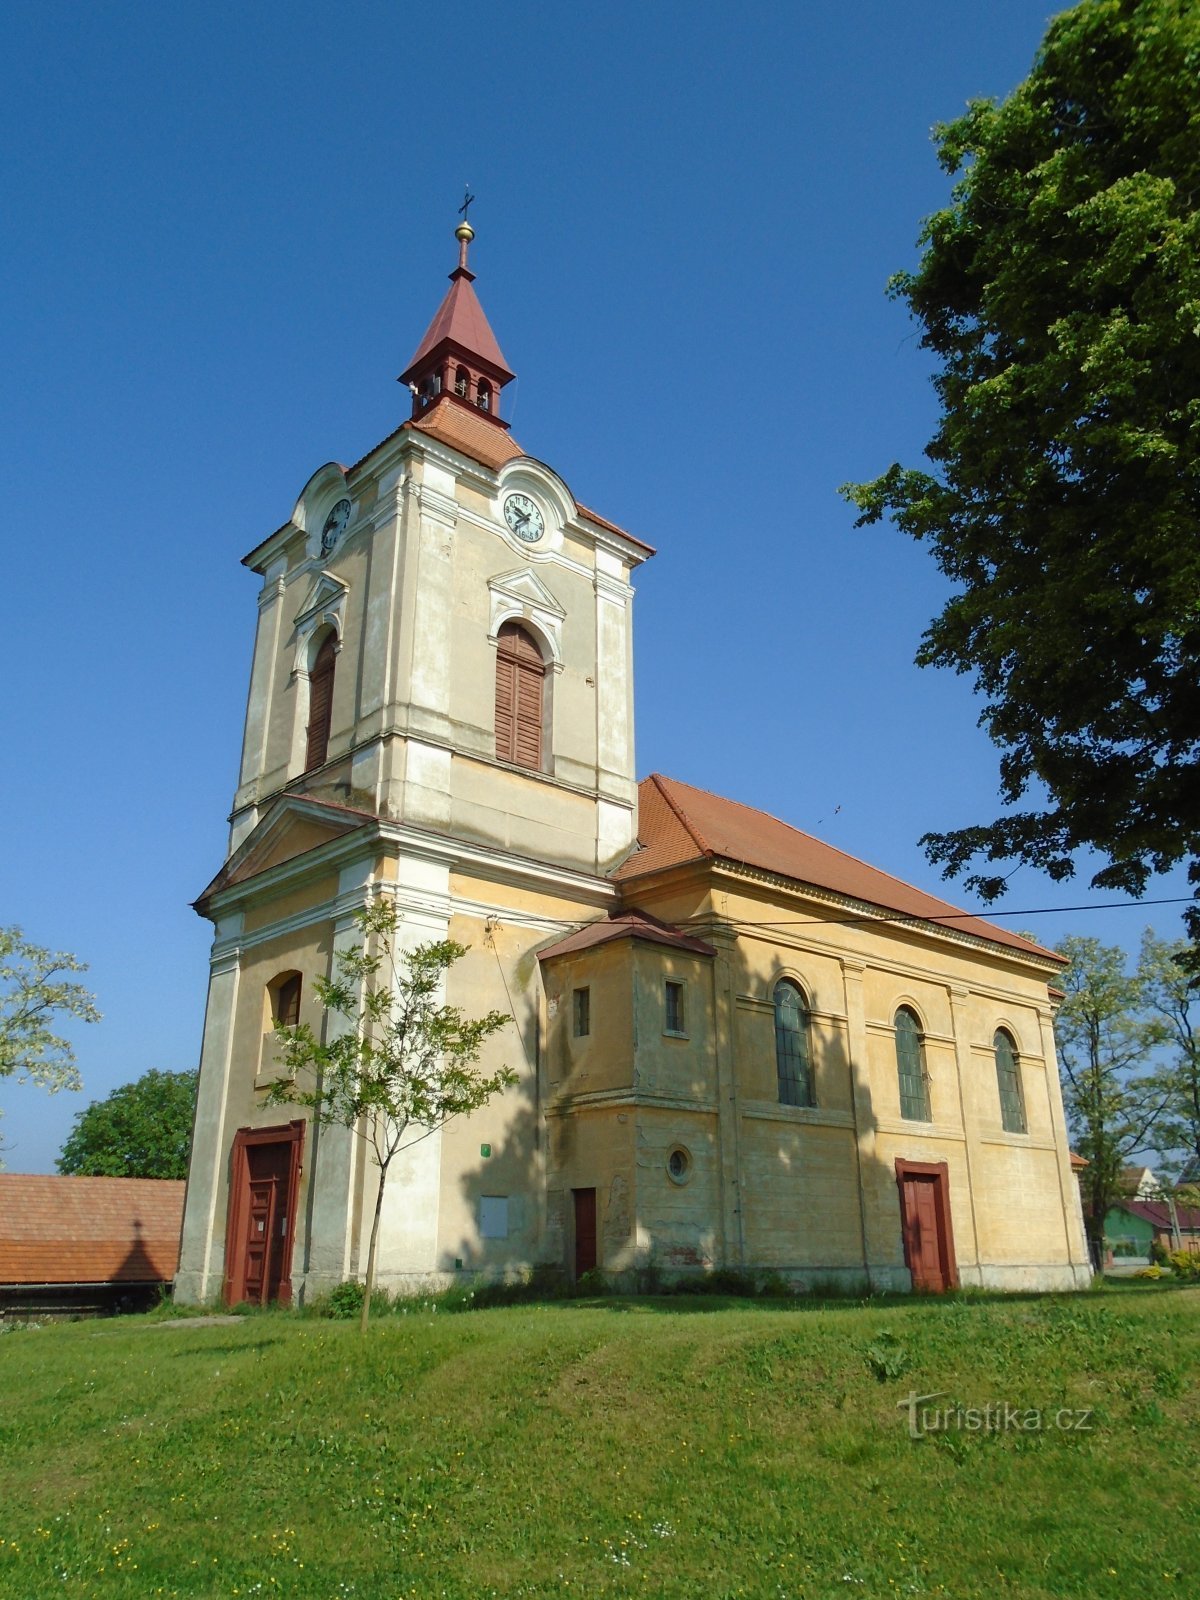 crkva sv. Petra i Pavla (Jeníkovice, 12.5.2018. kolovoza XNUMX.)